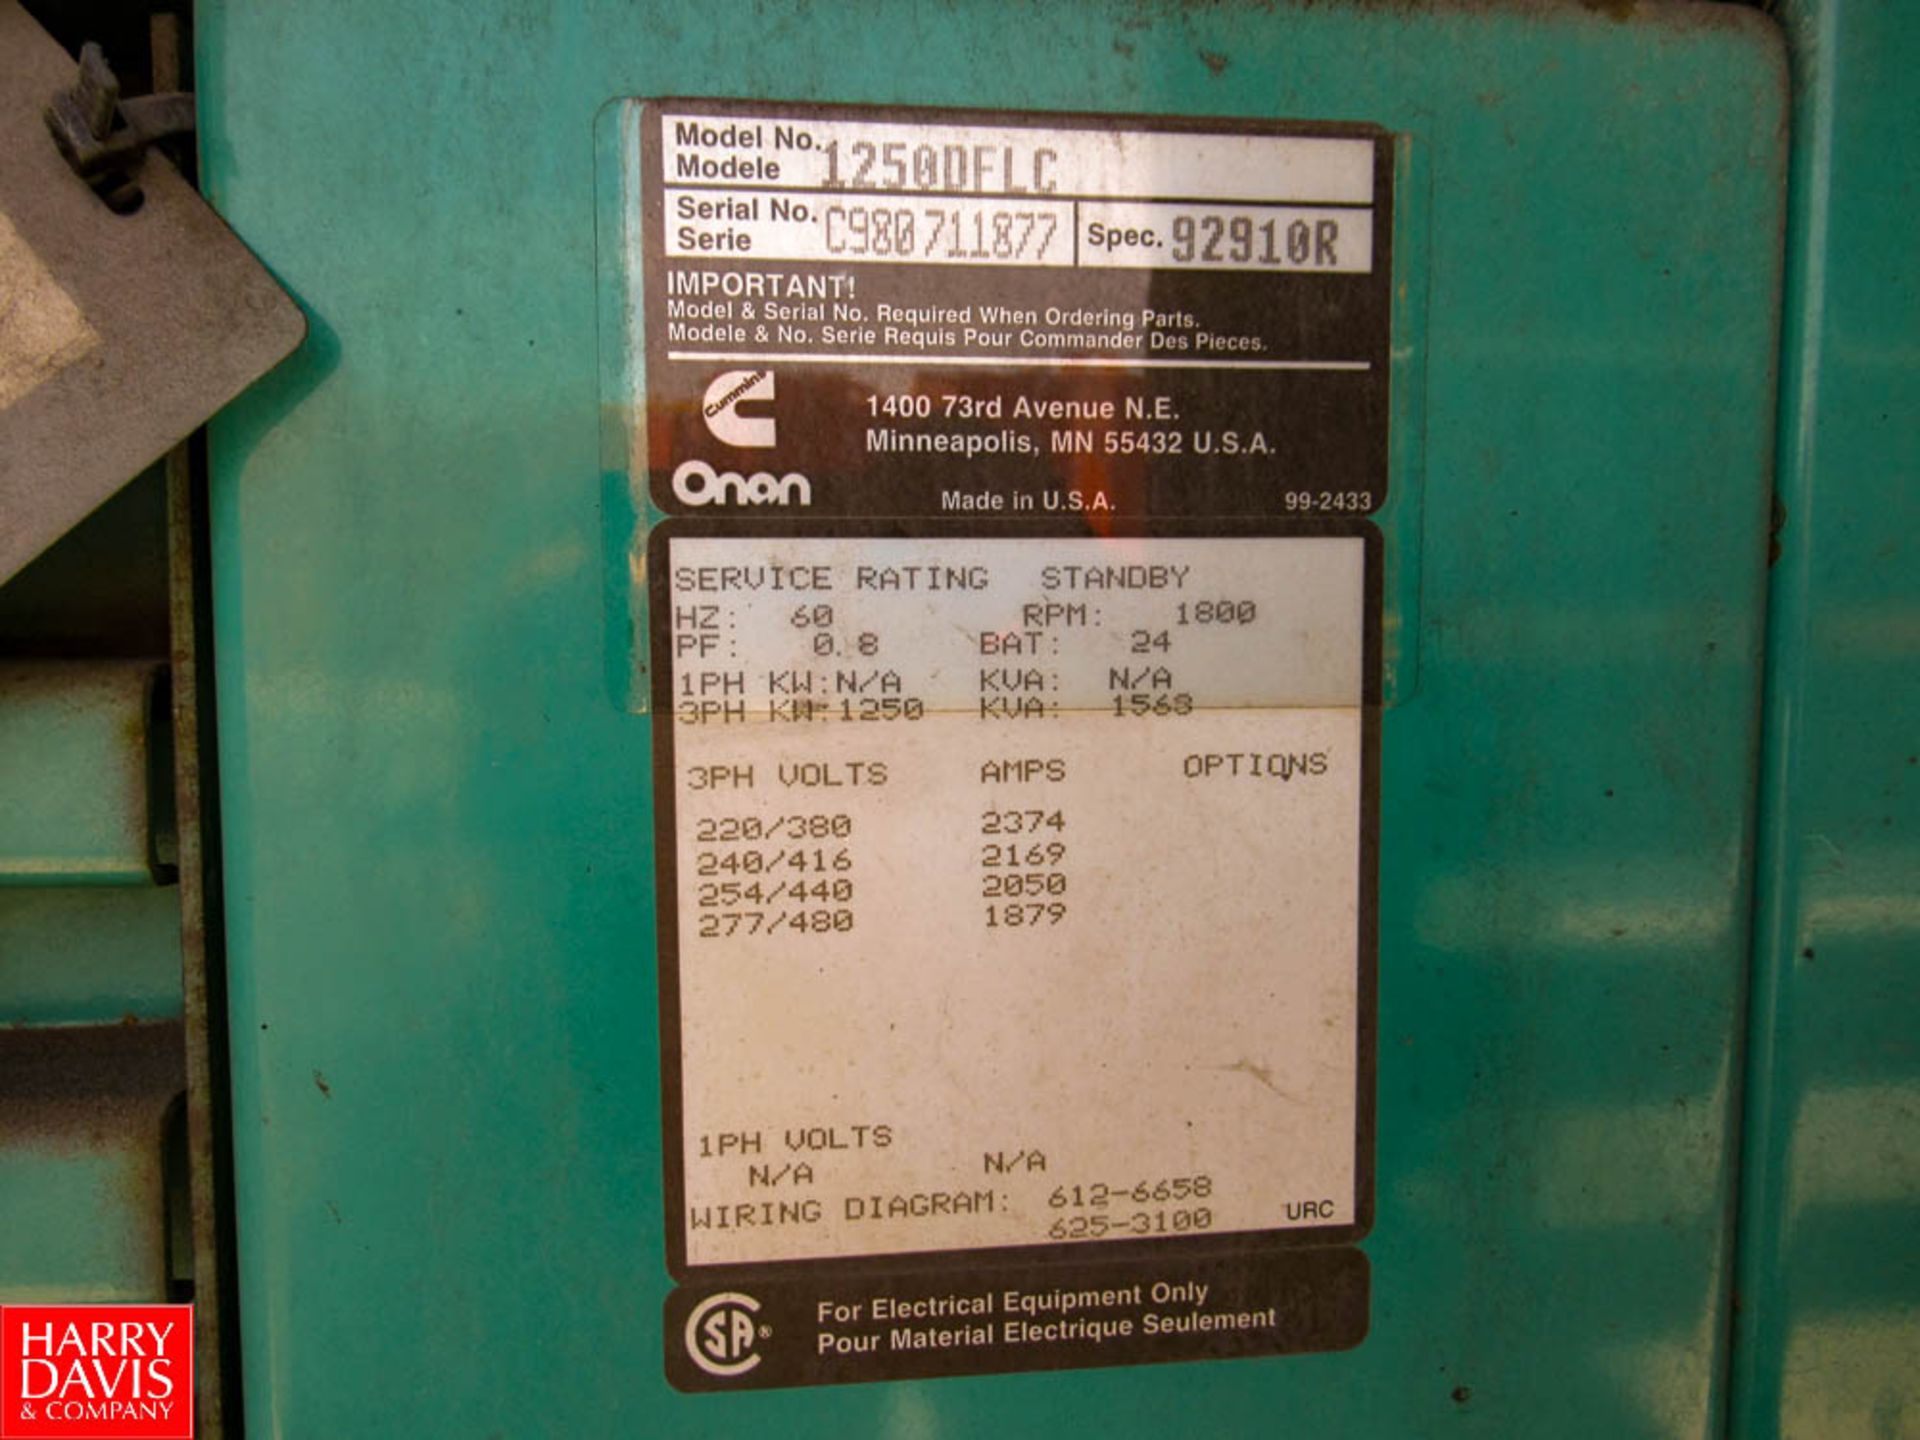 Onan Cummins 1250-Kw Diesel Gen Set, Model: 1250DFLC SN: C980711877, Located: Outside of Boiler Rm - - Image 3 of 3